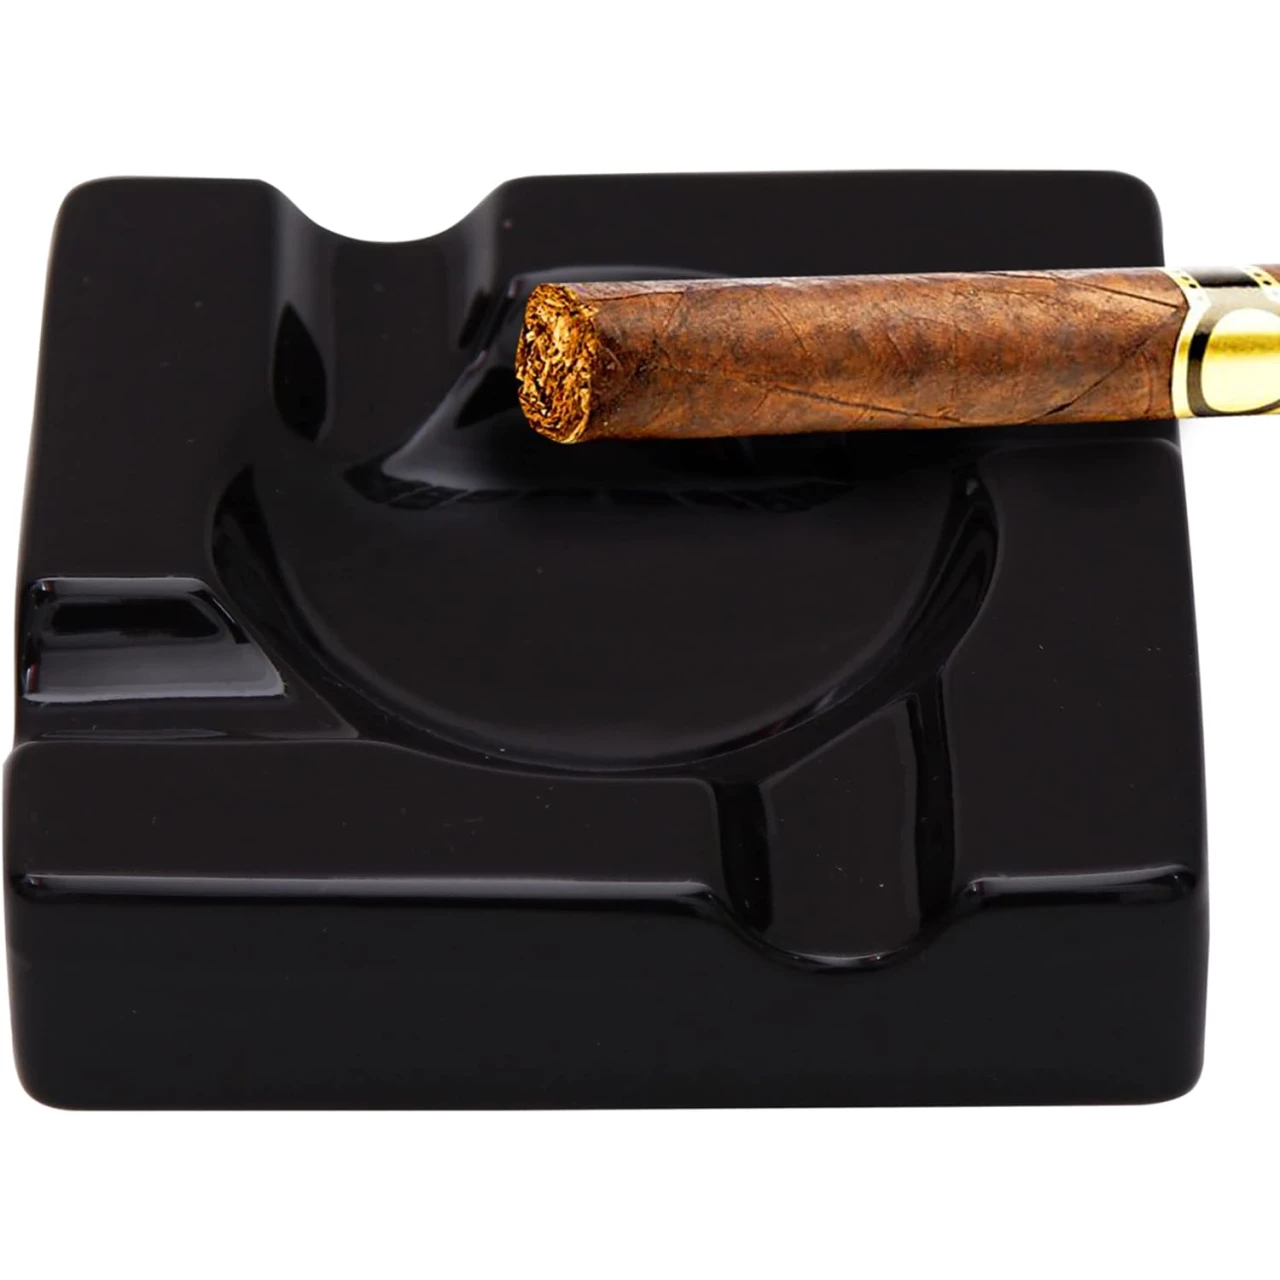 Cigar Ashtray Outdoor Cigarette Ash Tray - 5.9 inch Ceramic Ashtrays